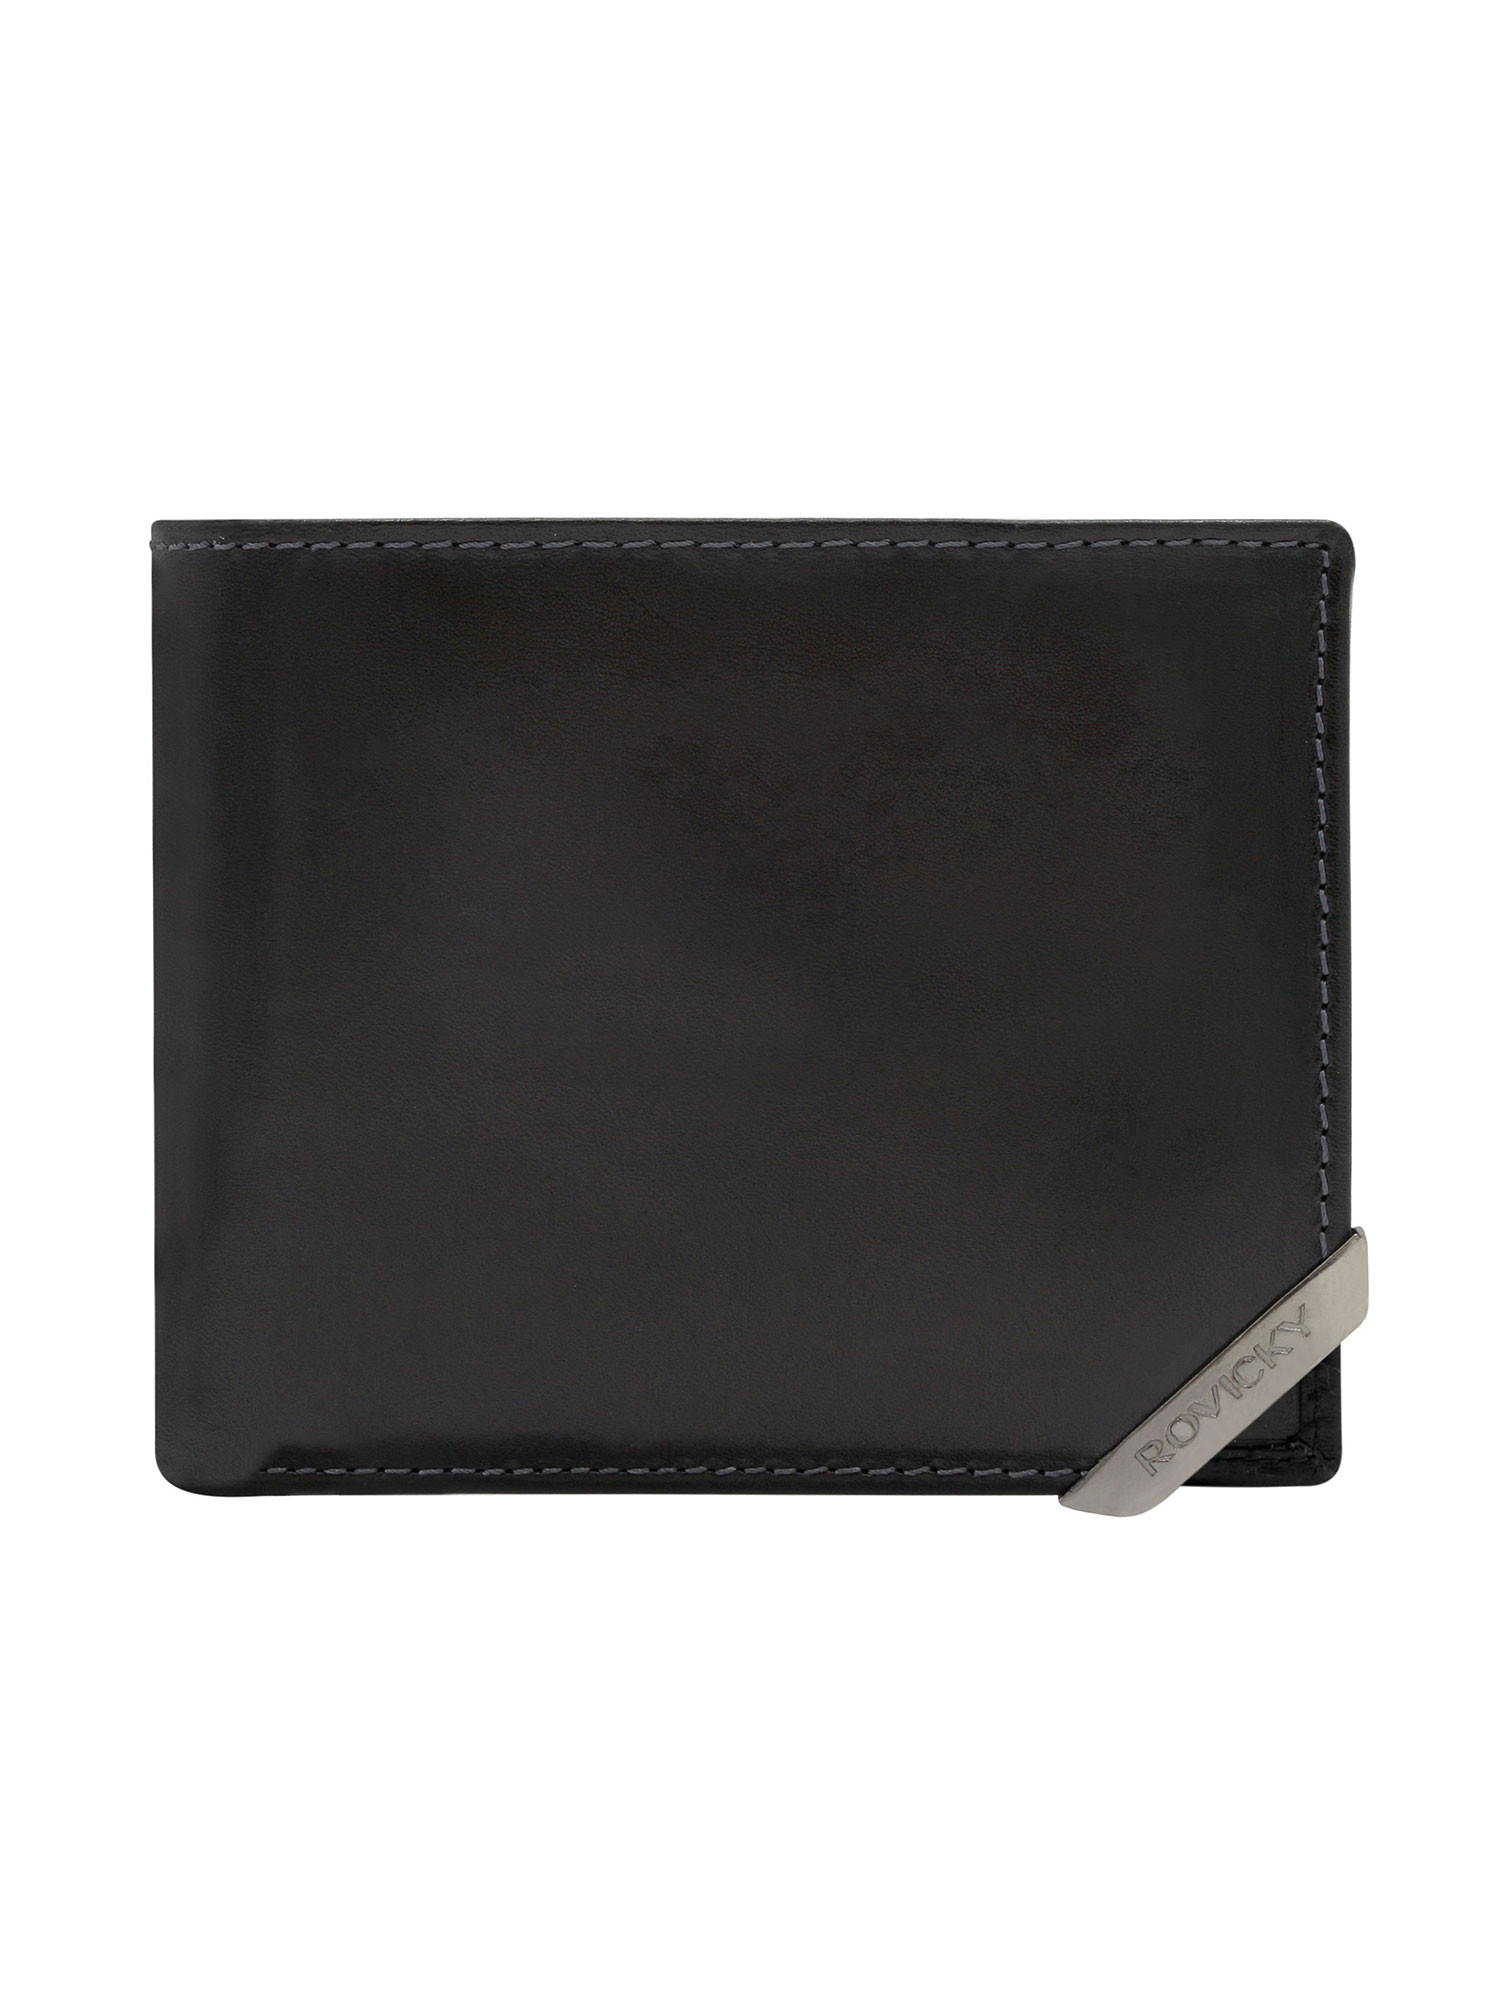 Peněženka černá jedna velikost model 17688949 - FPrice